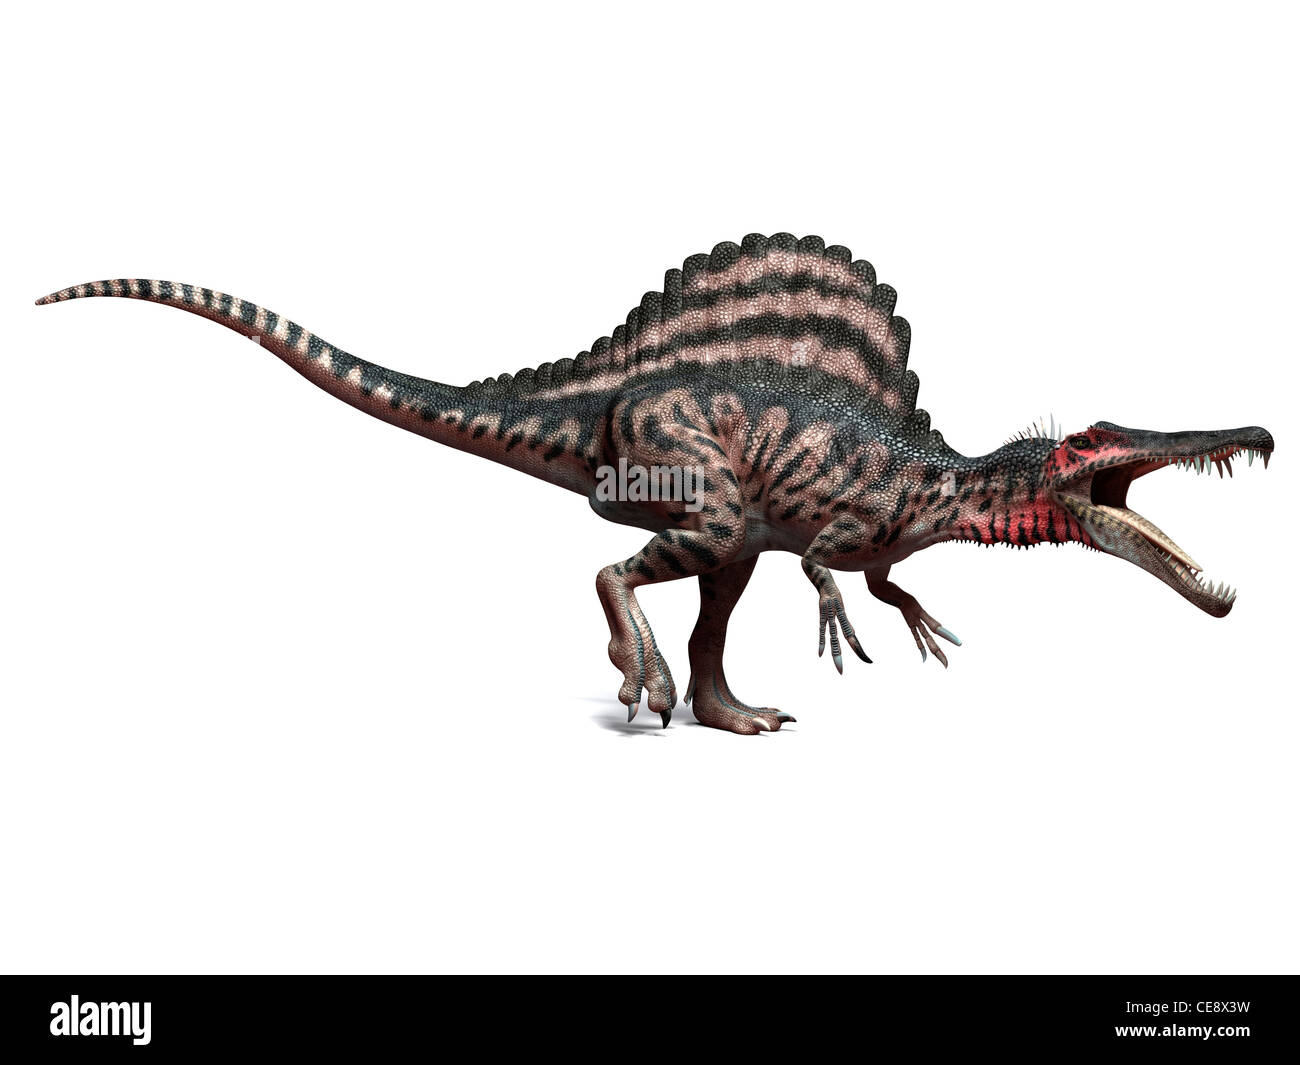 Spinosaurus dinosaur, artwork de l'ordinateur. Ce dinosaure vivait 95 à 80 millions d'années, pendant le Crétacé tardif. Banque D'Images